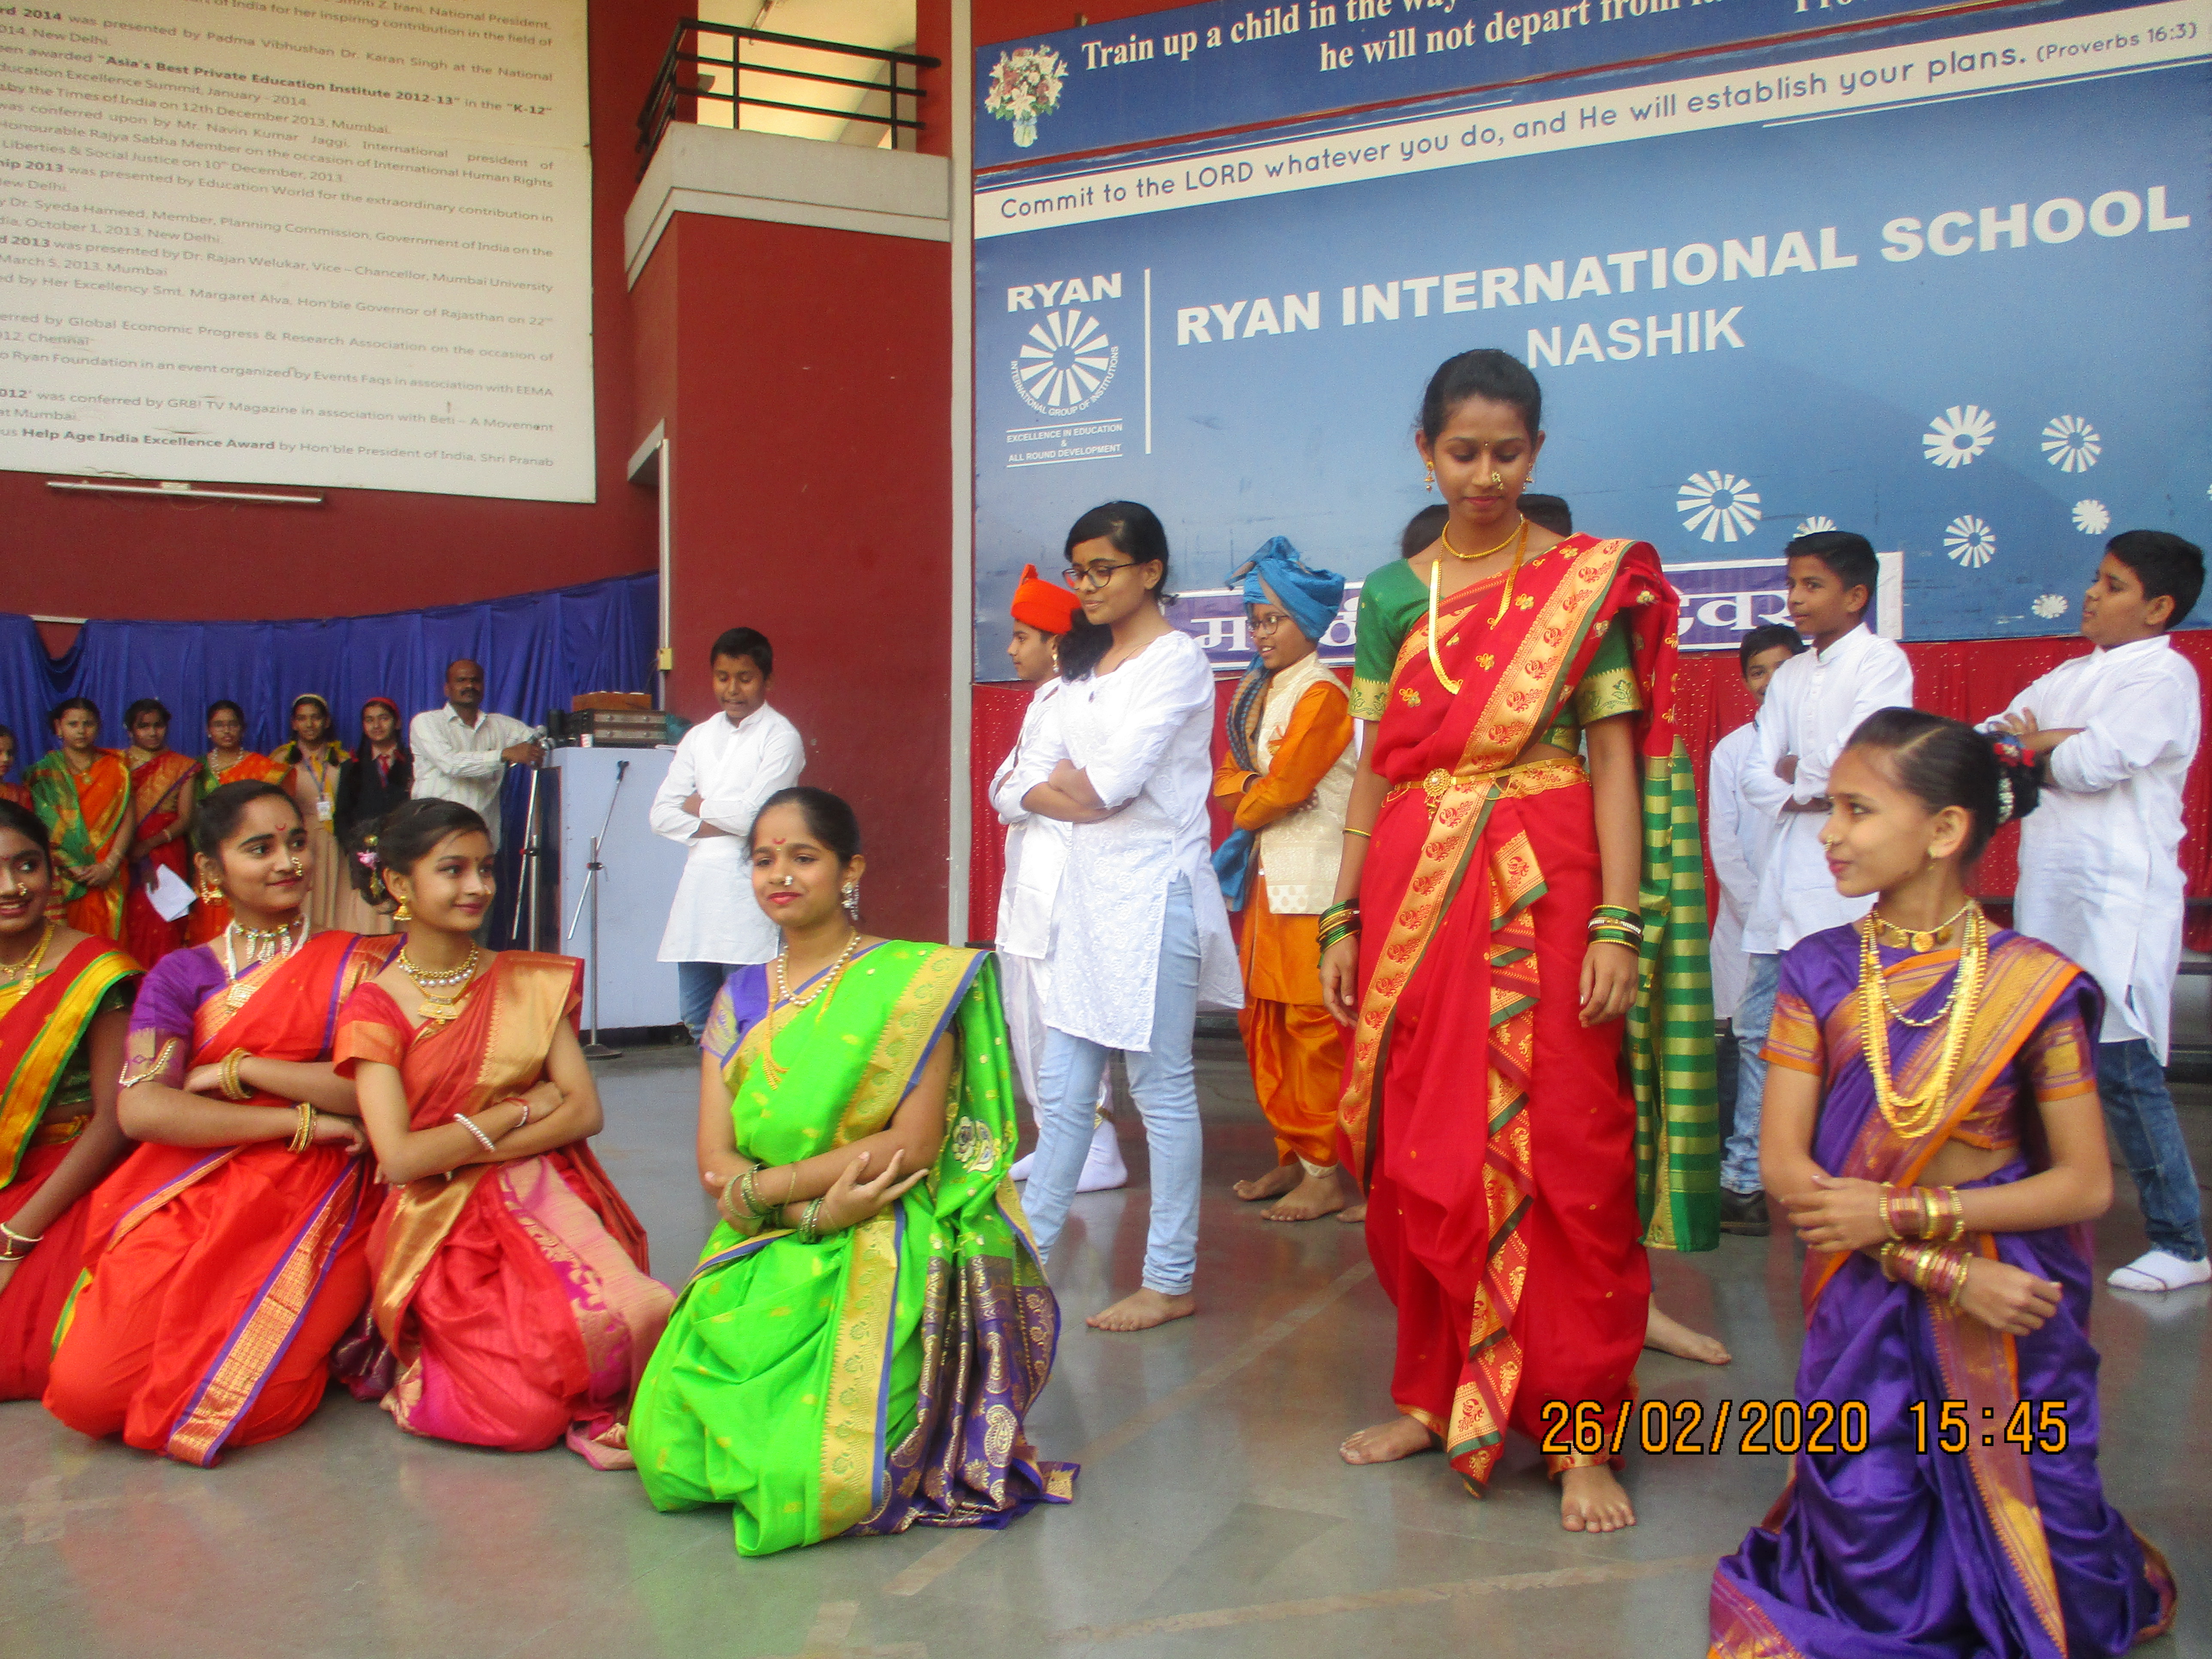 Marathi day - Ryan International School, Nashik